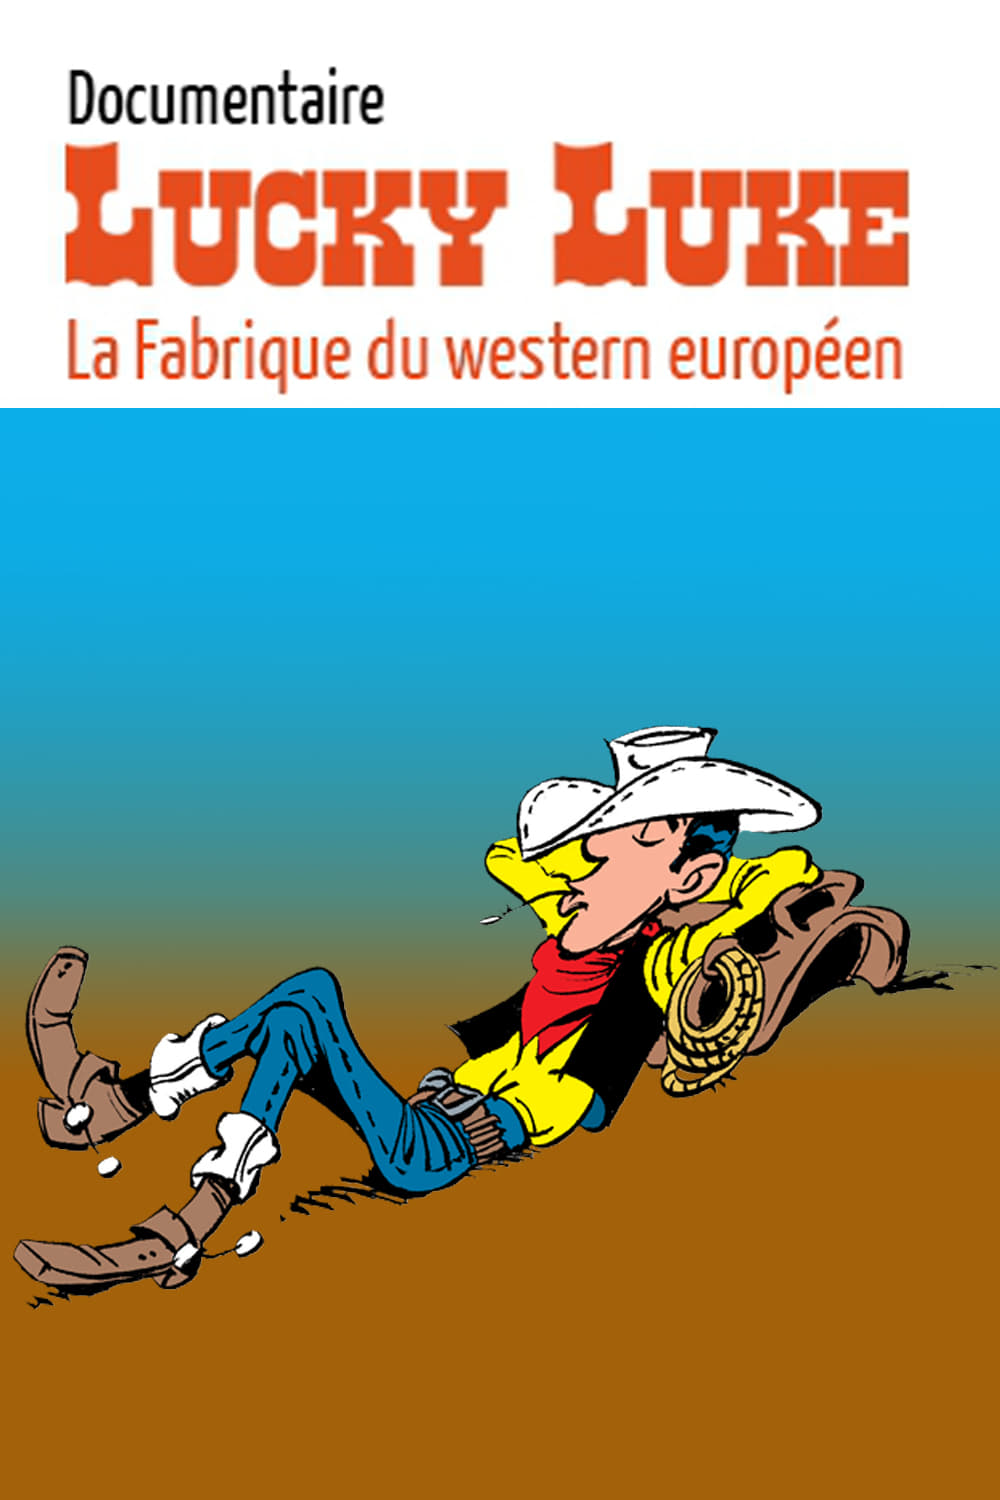 Lucky Luke, la fabrique du western européen